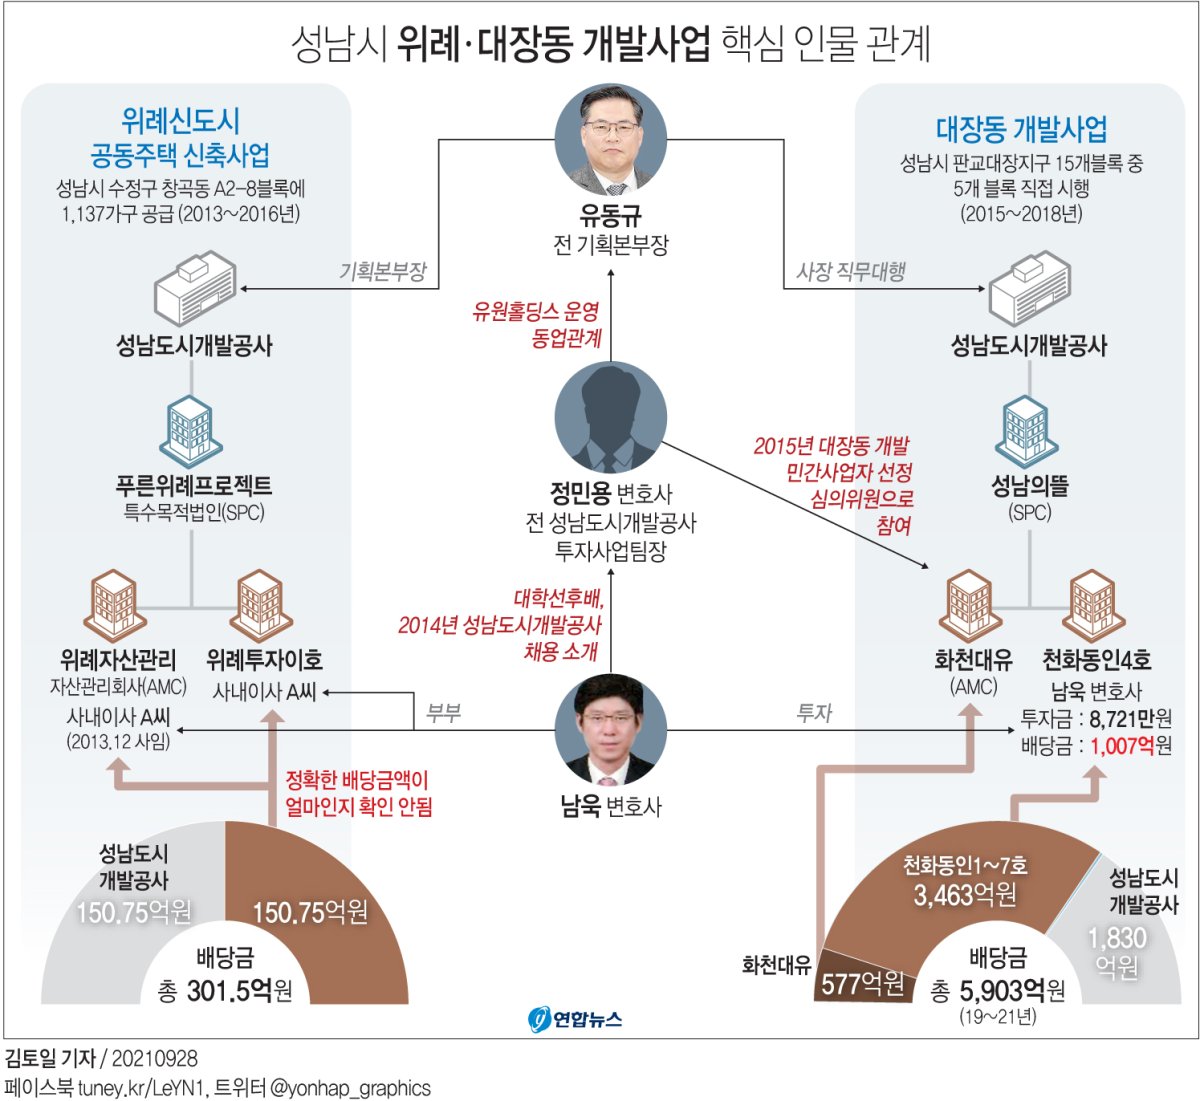 [그래픽] 성남시 위례ㆍ대장동 개발사업 핵심 인물 관계